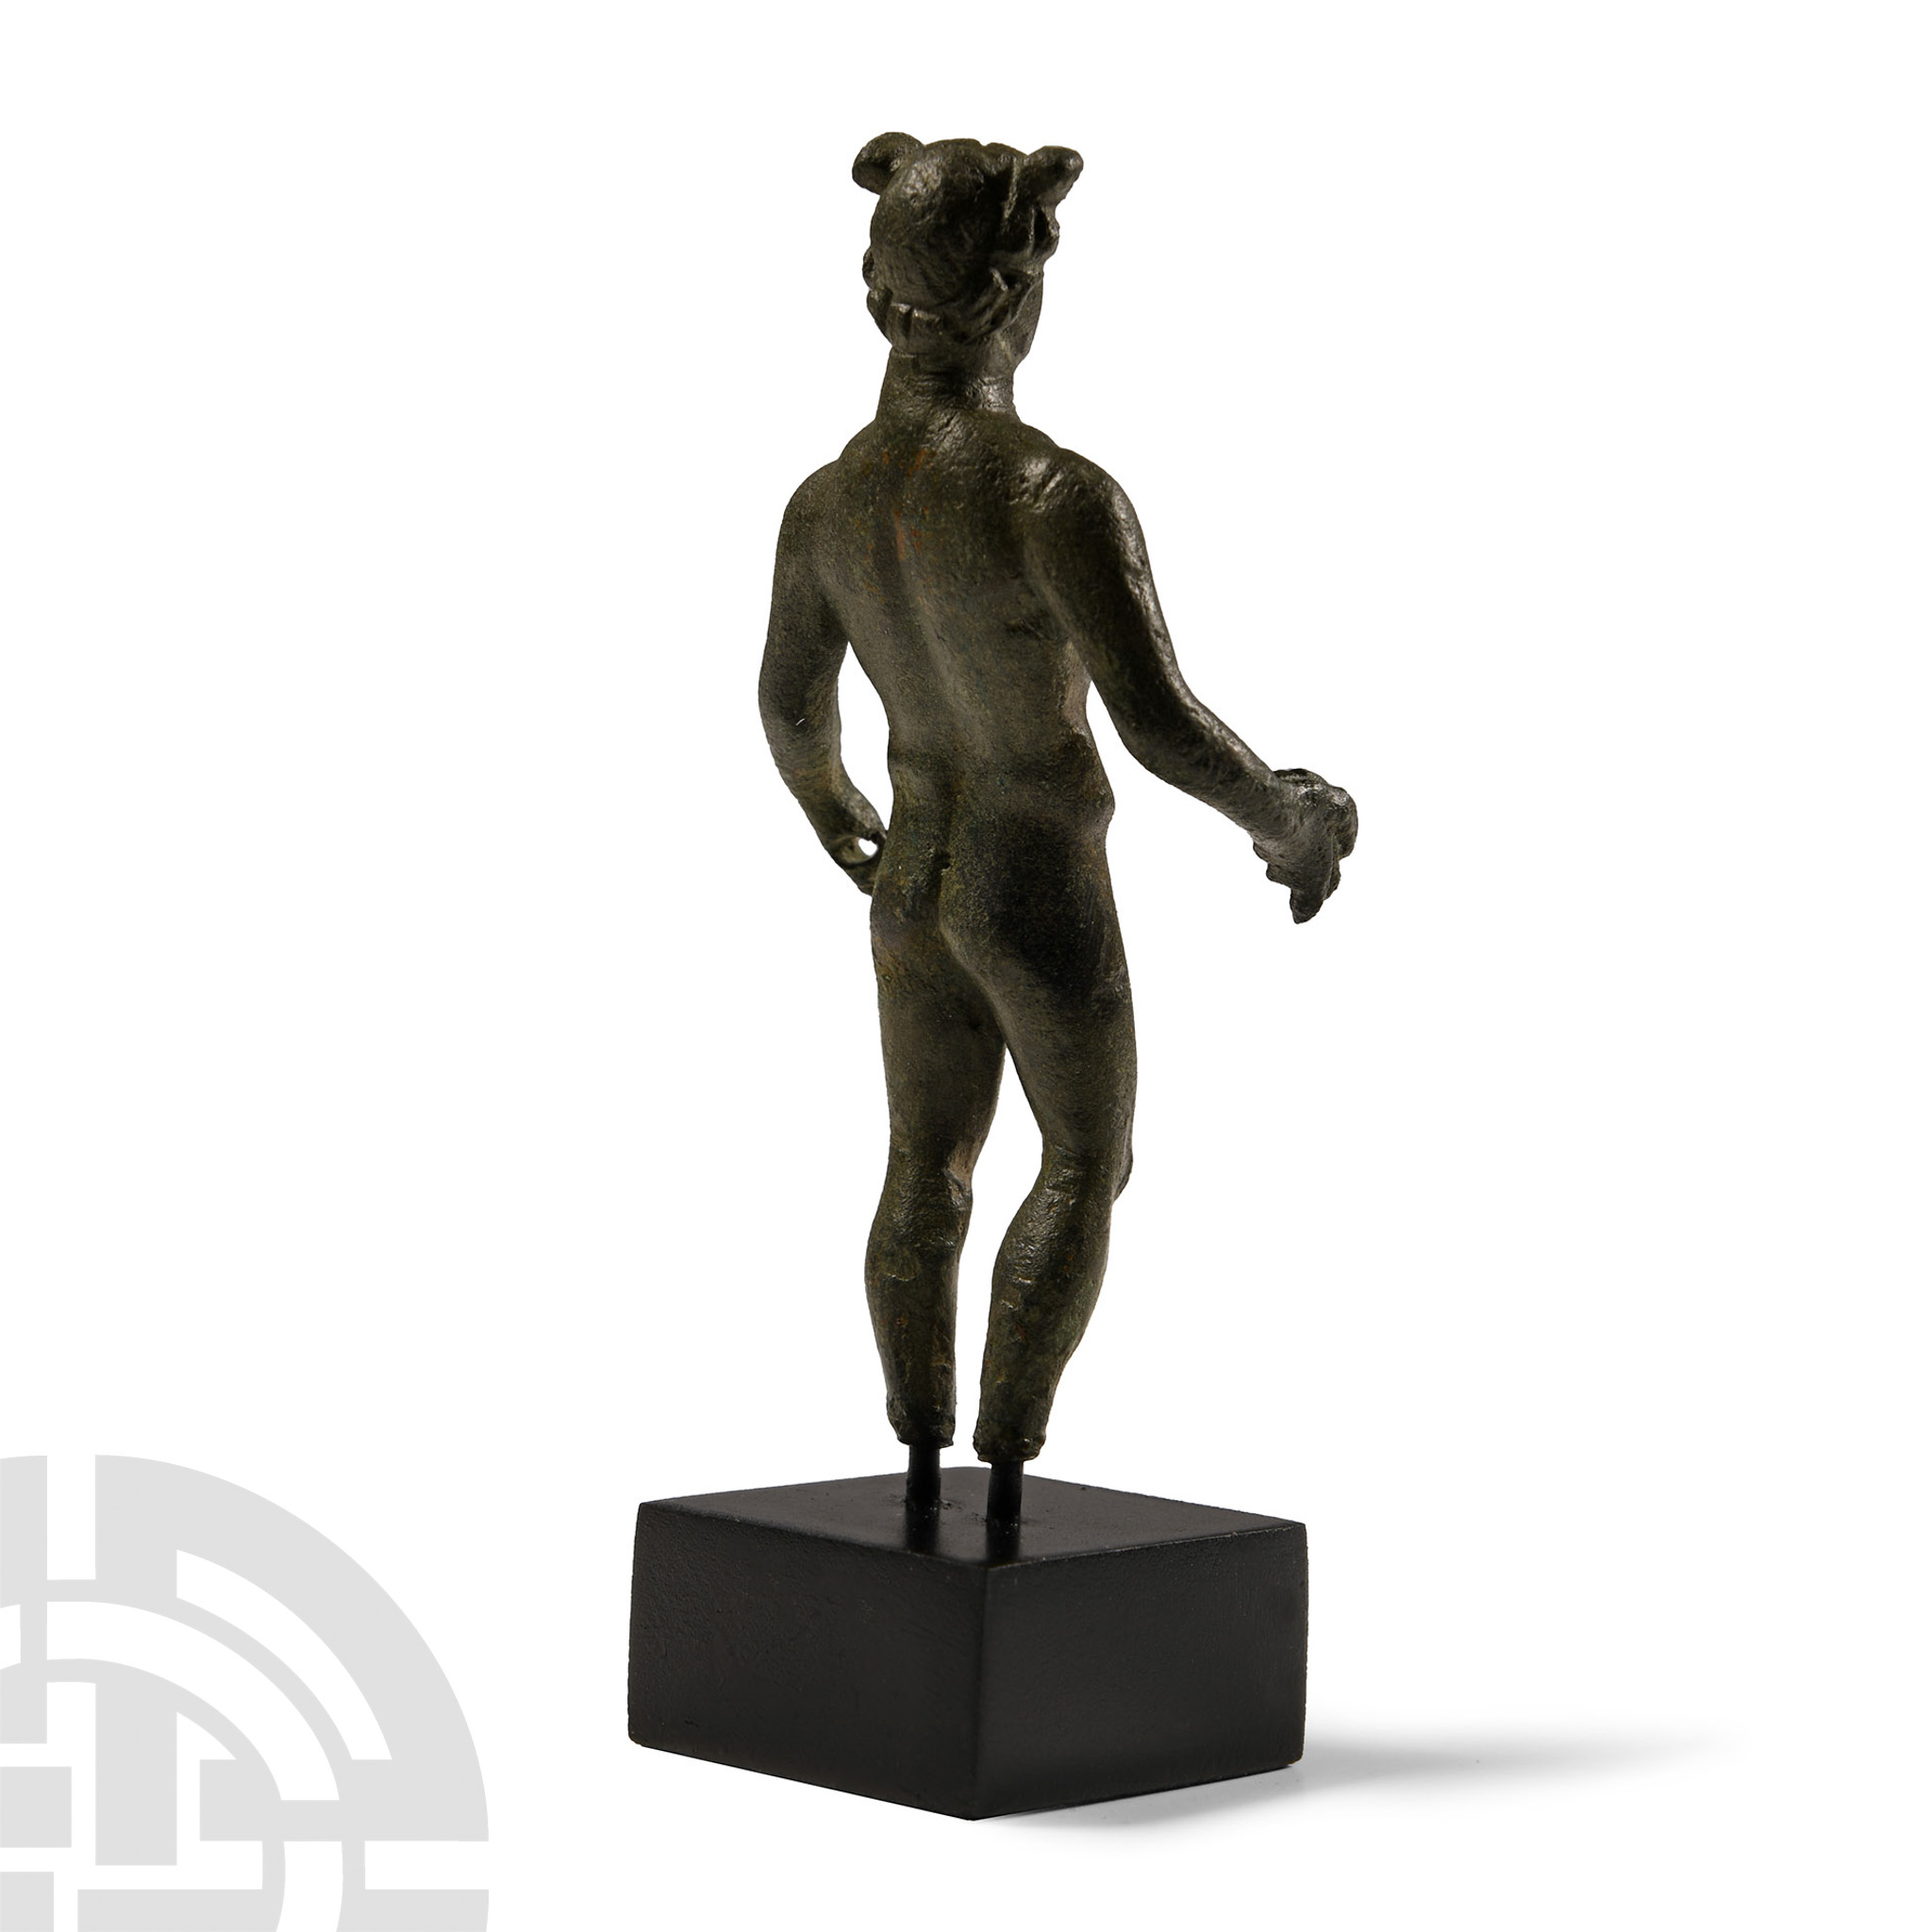 Published 'The Brixton Deverill' Romano-British Bronze Mercury Statuette - Image 2 of 3